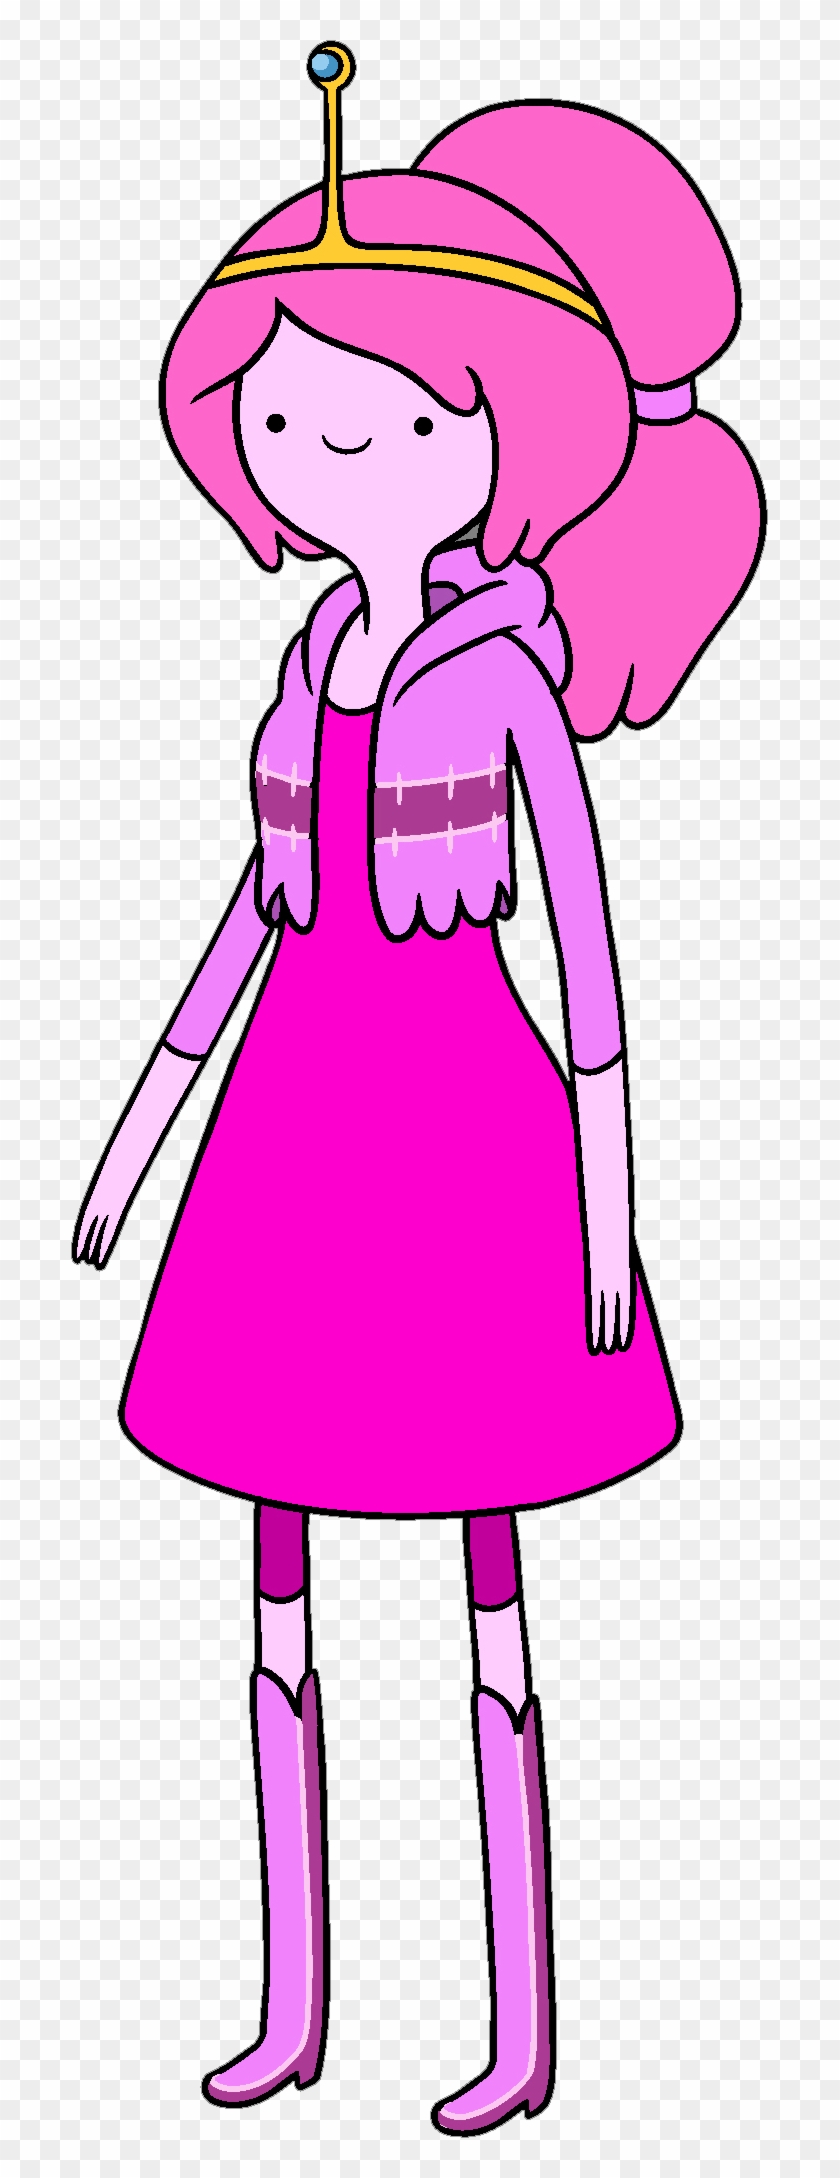 Princess Bonnibel Bubblegum - Adventure Time Princess Bubblegum #703677